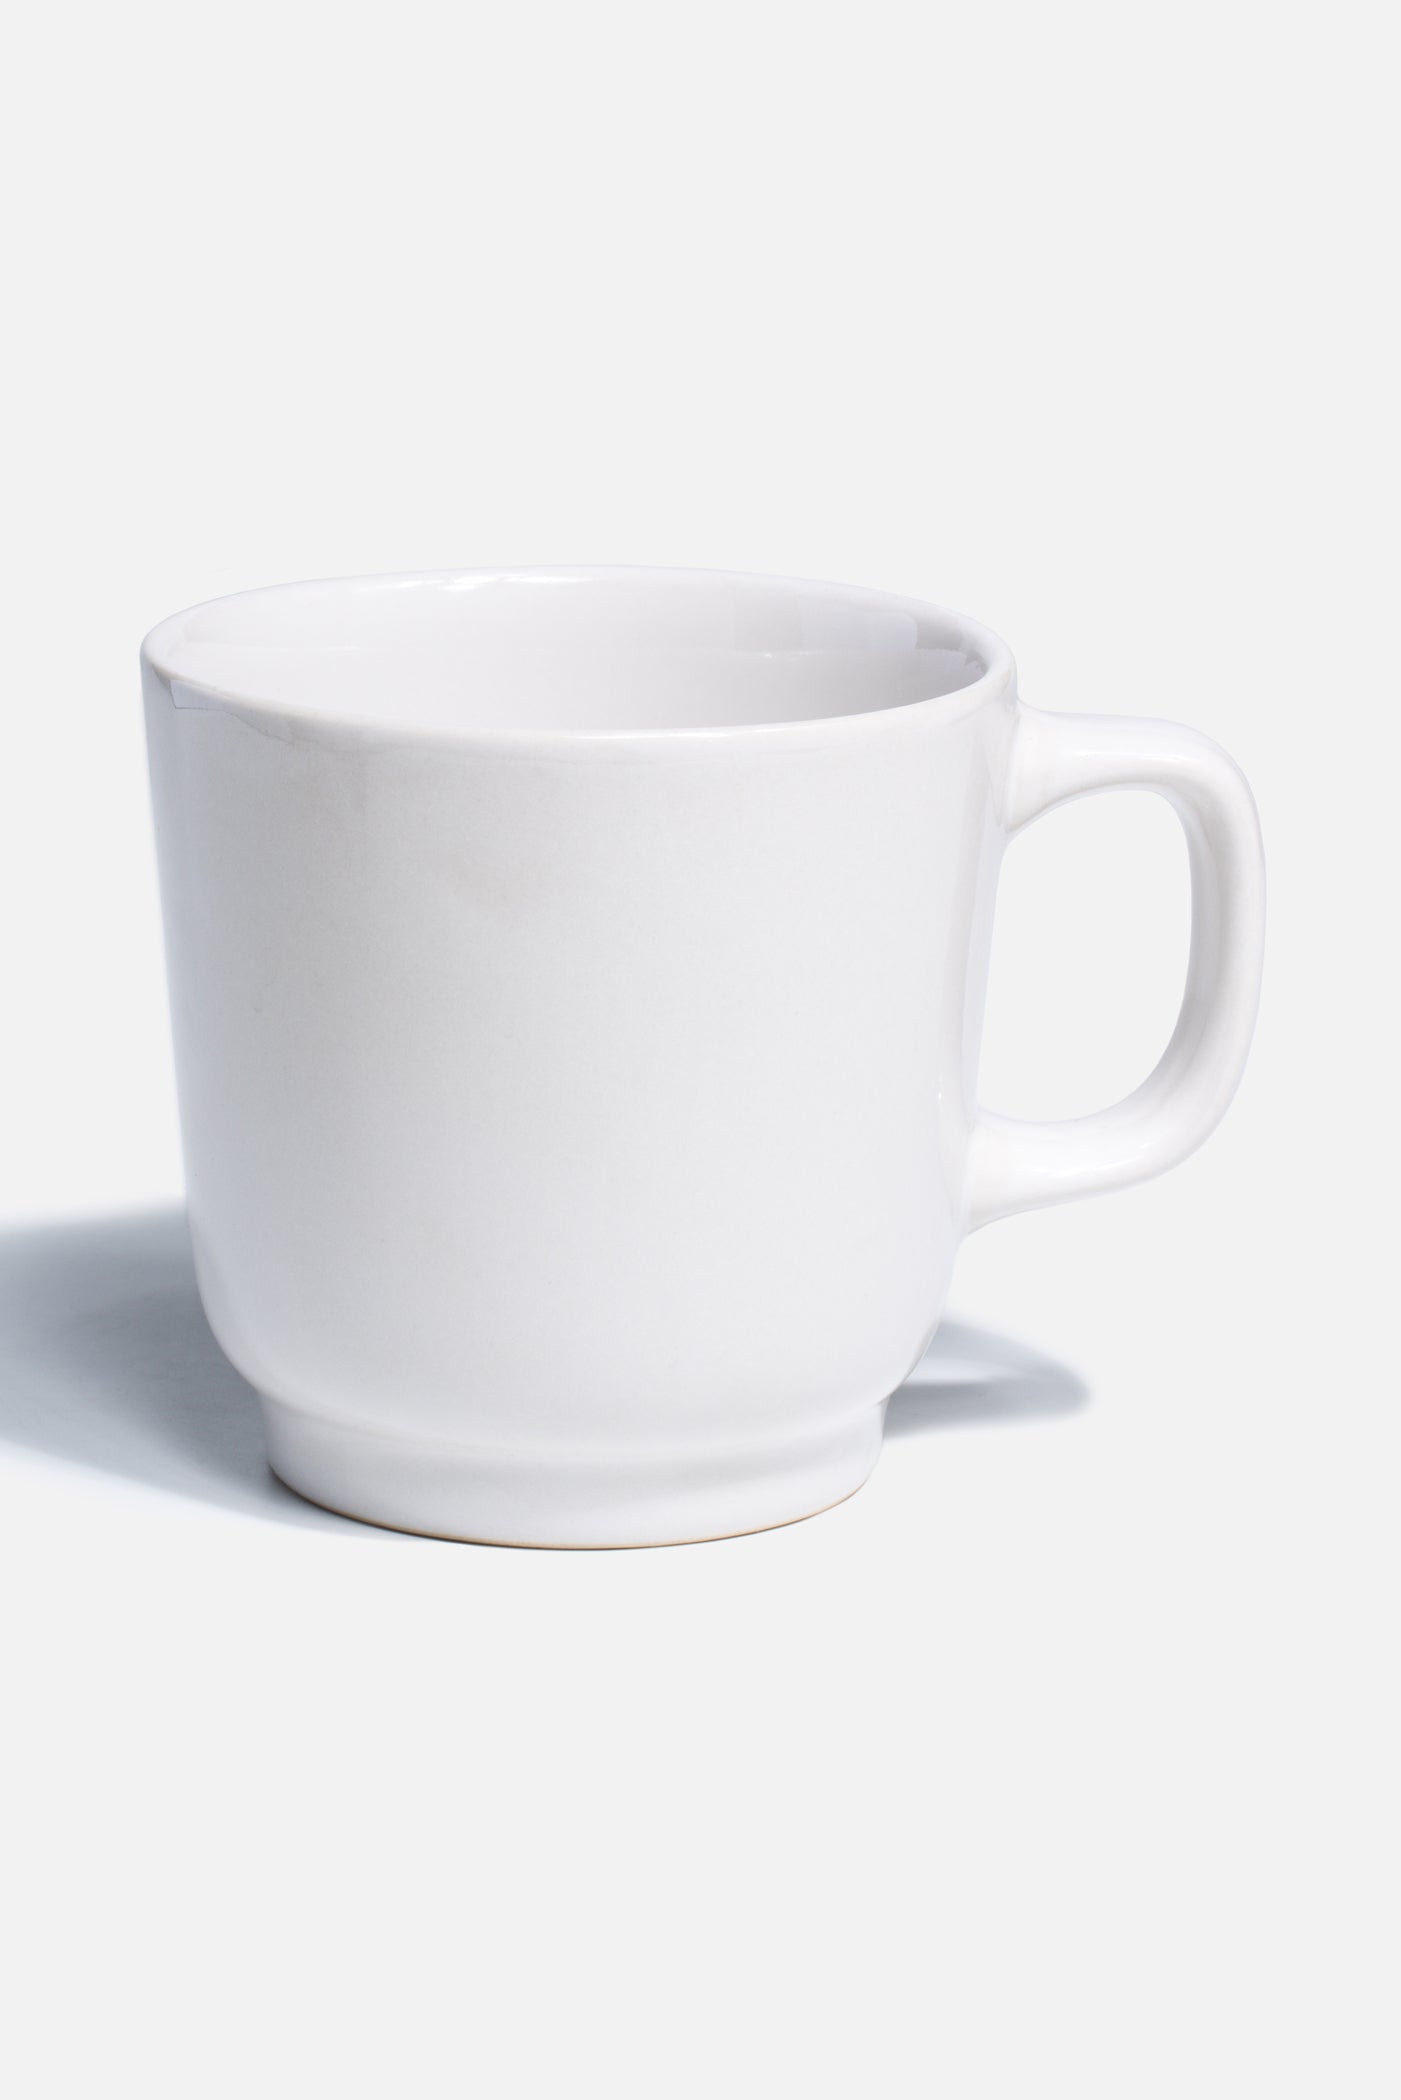 precio taza mug blanca maha